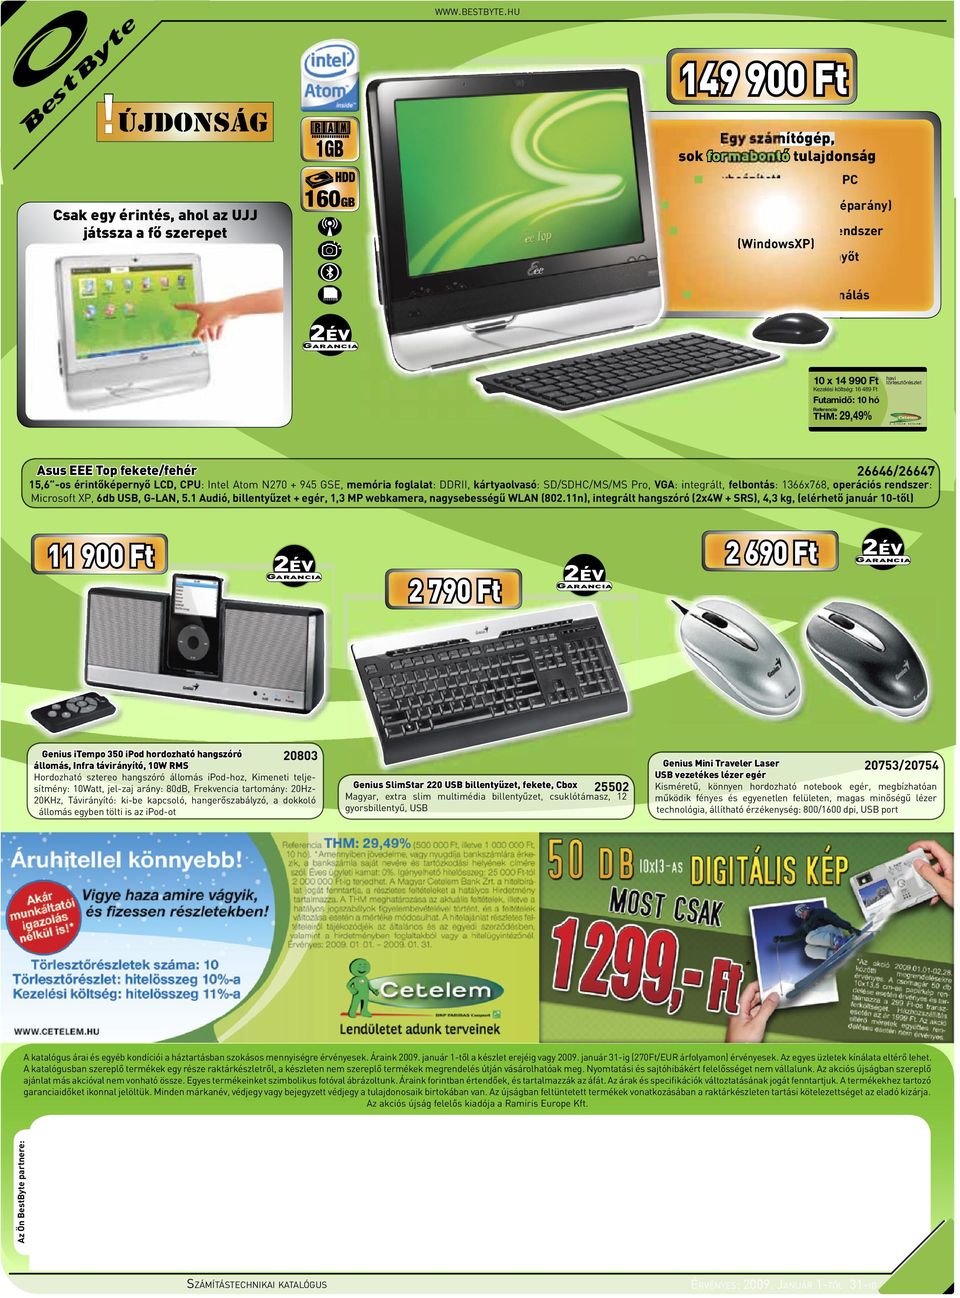 operációs rendszer (WindowsXP) és speciális érintőképernyőt támogató szoftverek Alacsony energiafelhasználás 10 x 14 990 Ft Kezelési költség: 16 489 Ft Asus EEE Top fekete/fehér 26646/26647 15,6 -os